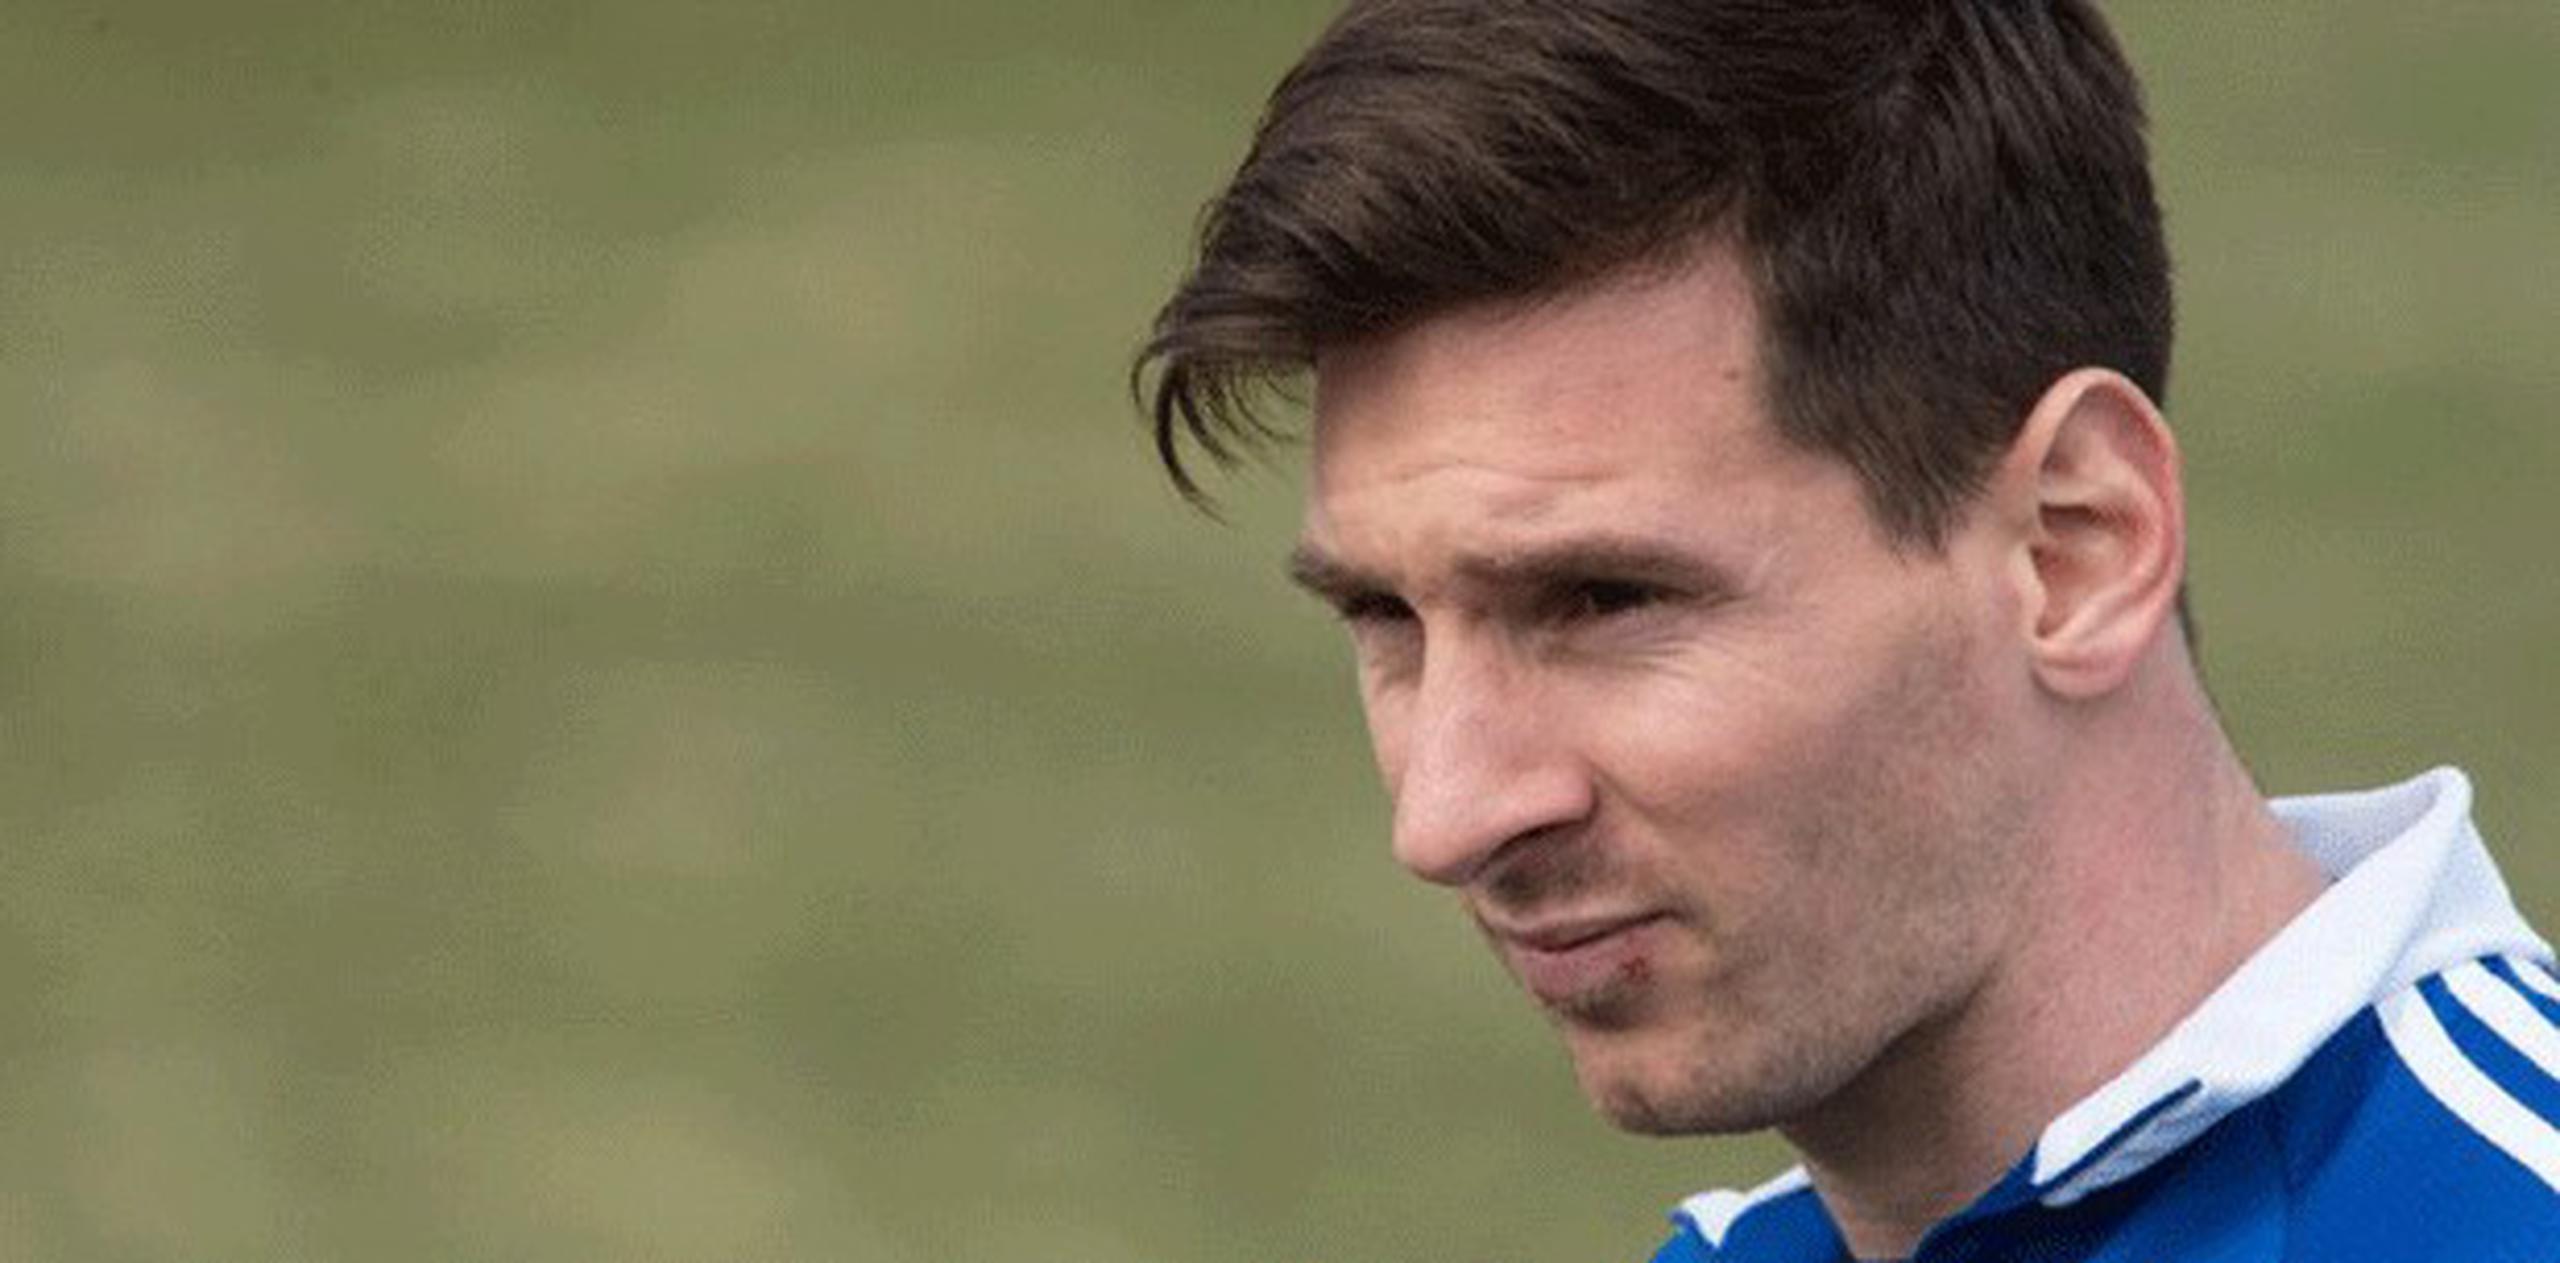 Lionel Messi encabeza por quinta ocasión en seis años la lista de jugadores más adinerados que publica la revista especializada France Football, con ingresos estimados en 65 millones de euros (71.3 millones de dólares) en 2014. (Archivo)